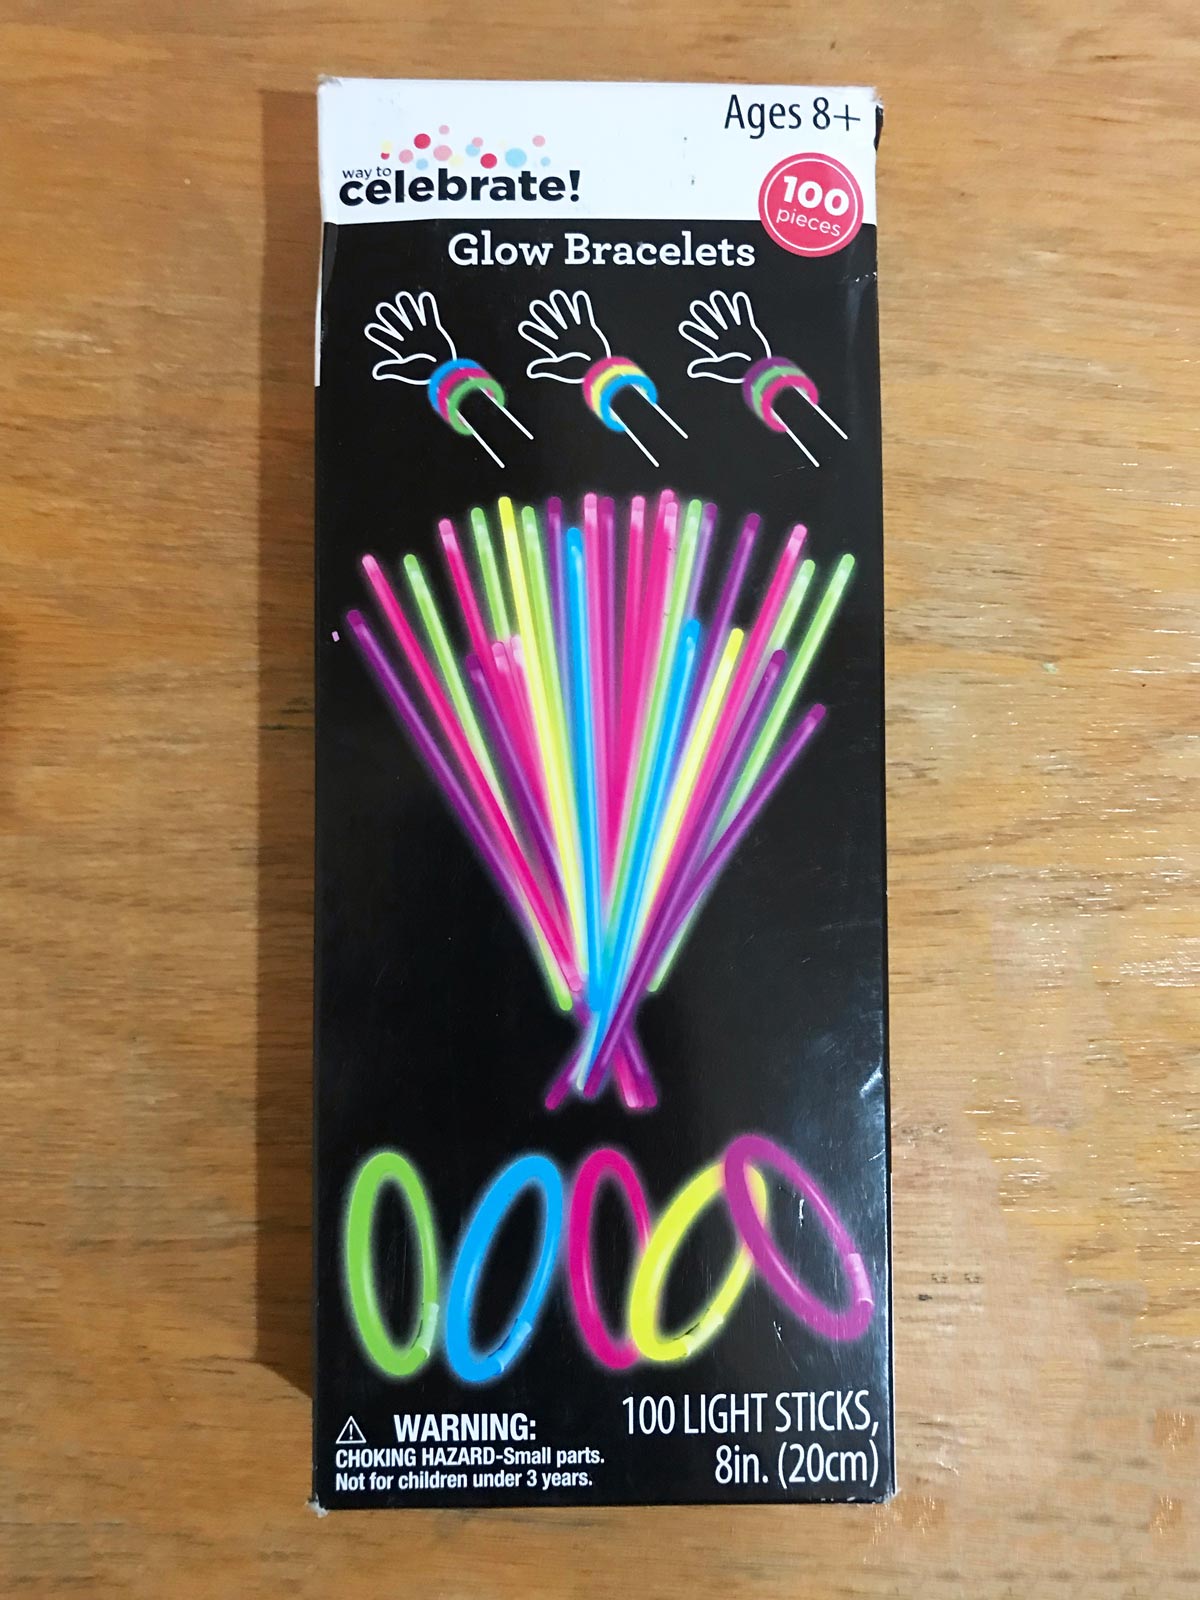 box of glow stick bracelets on wood desk.